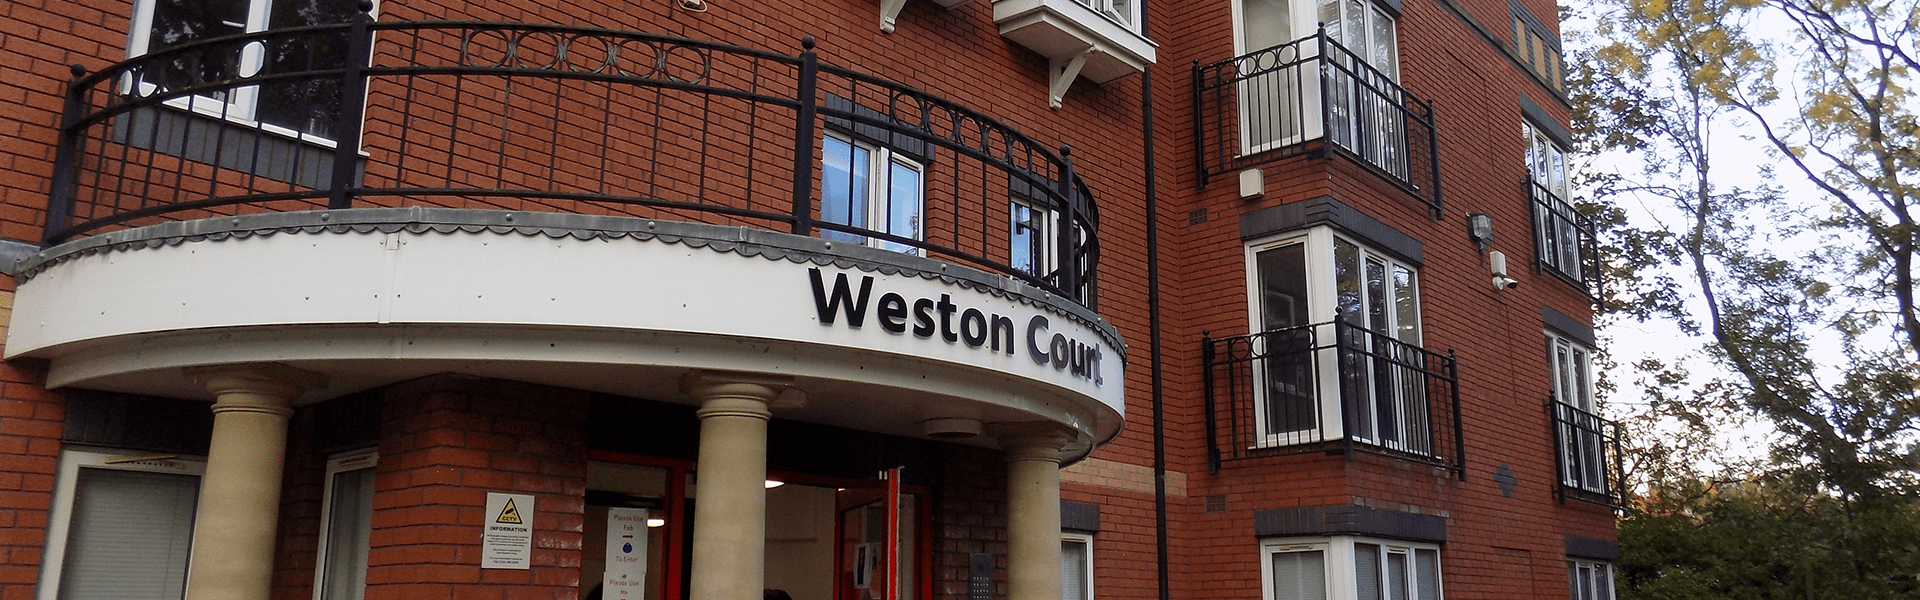 Weston Court banner